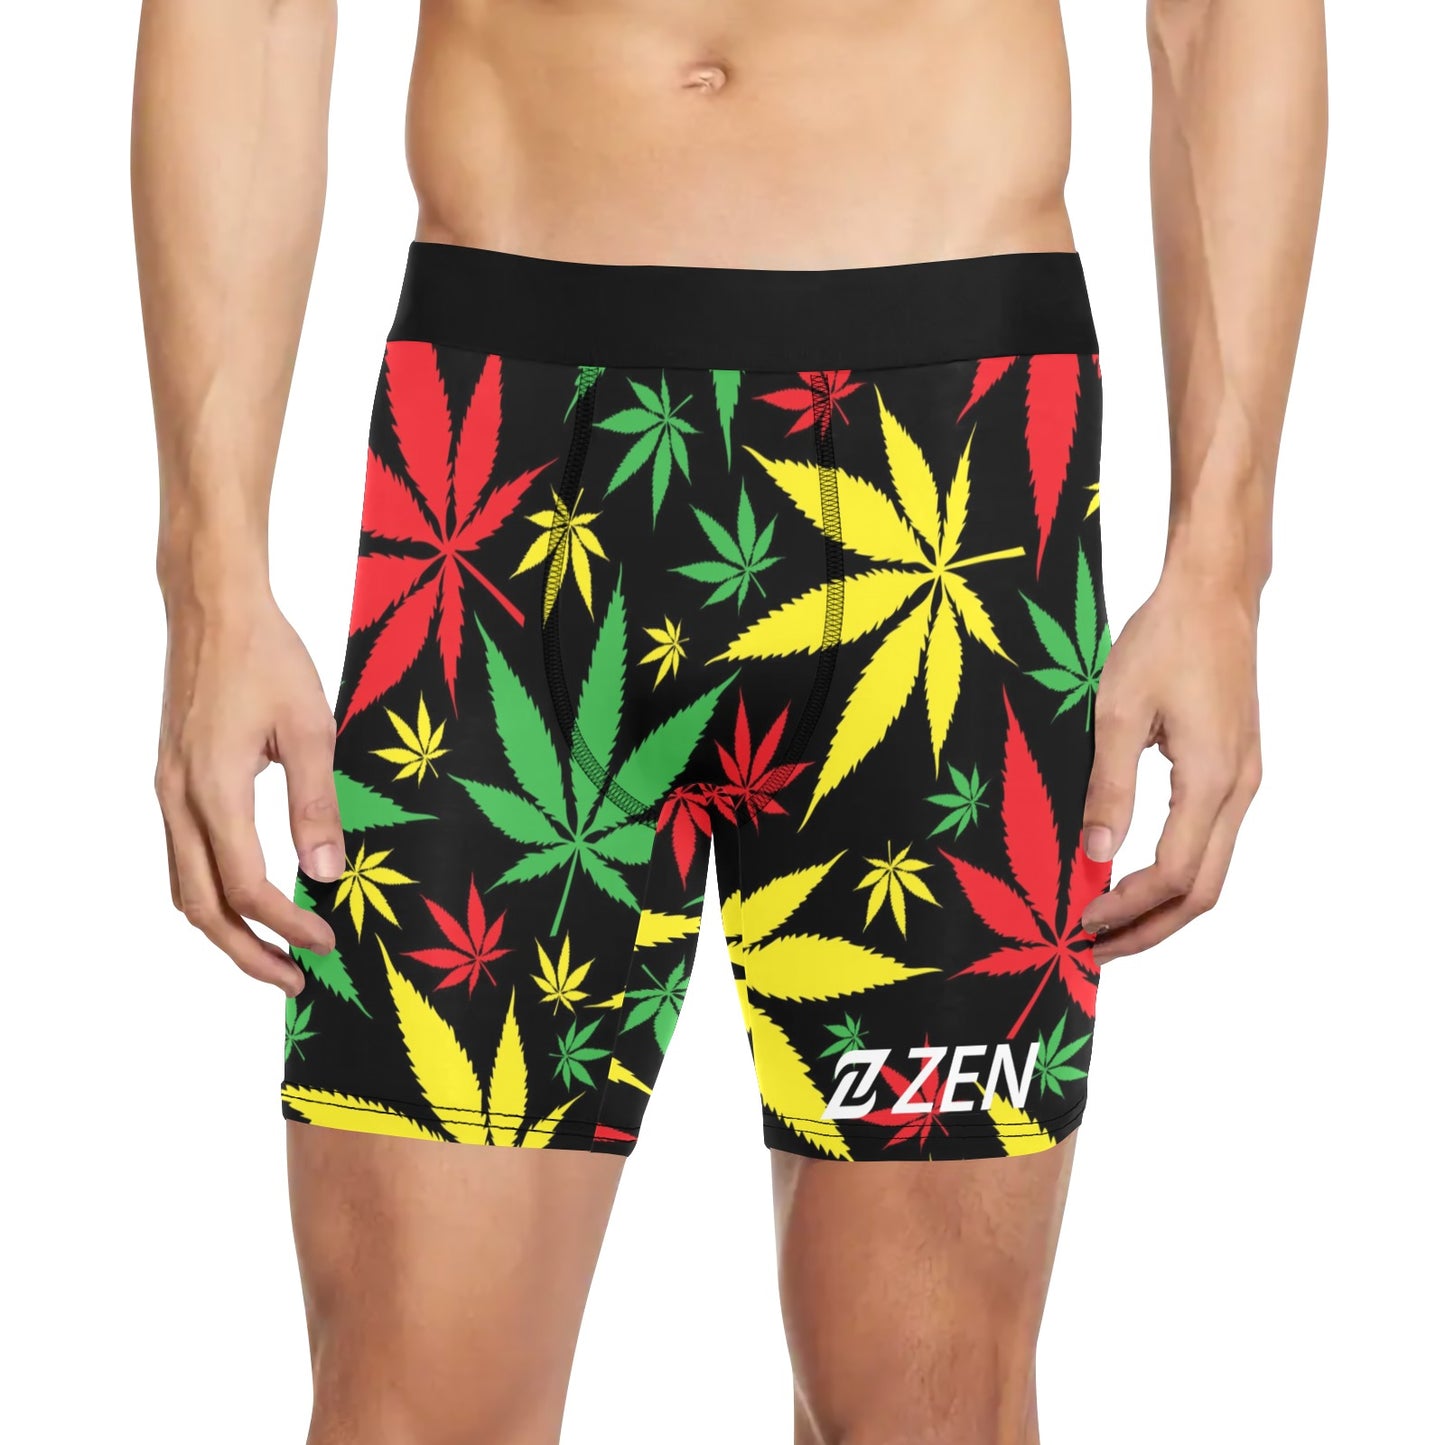 Zen Boxers Long - Jamaican Marijuana